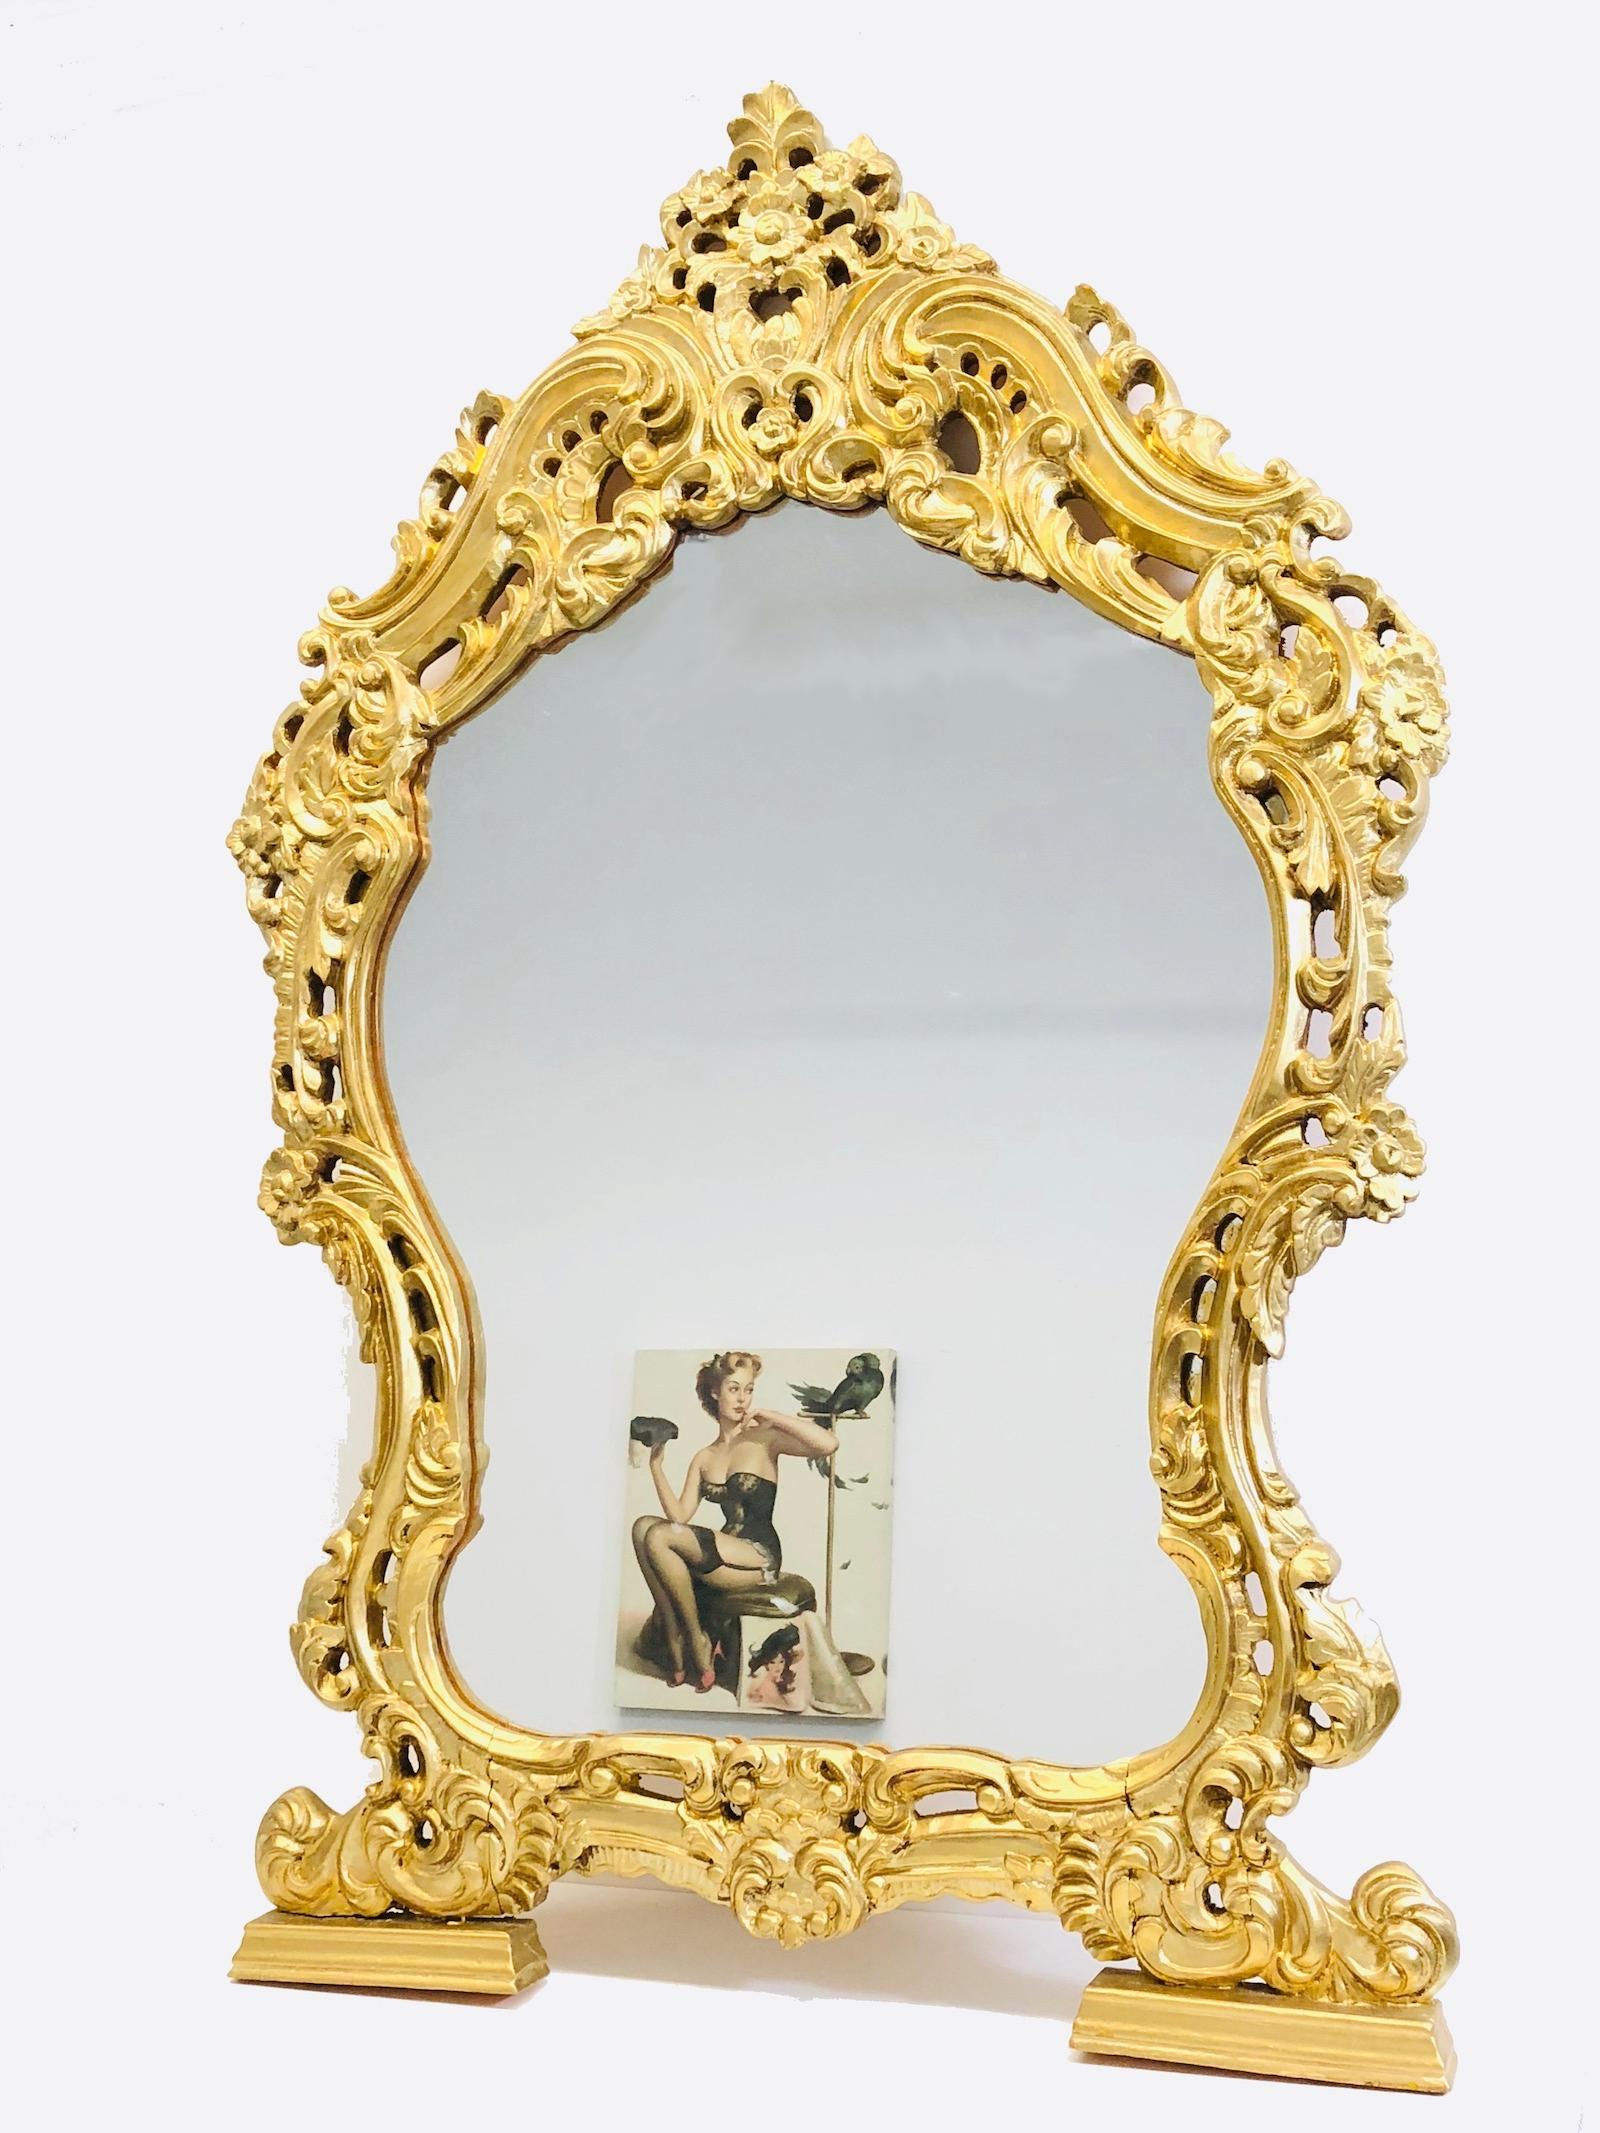 Superbe grand miroir sculpté de style Hollywood Regency. Le cadre en bois doré entoure un miroir en verre. Fabriquées en Italie.